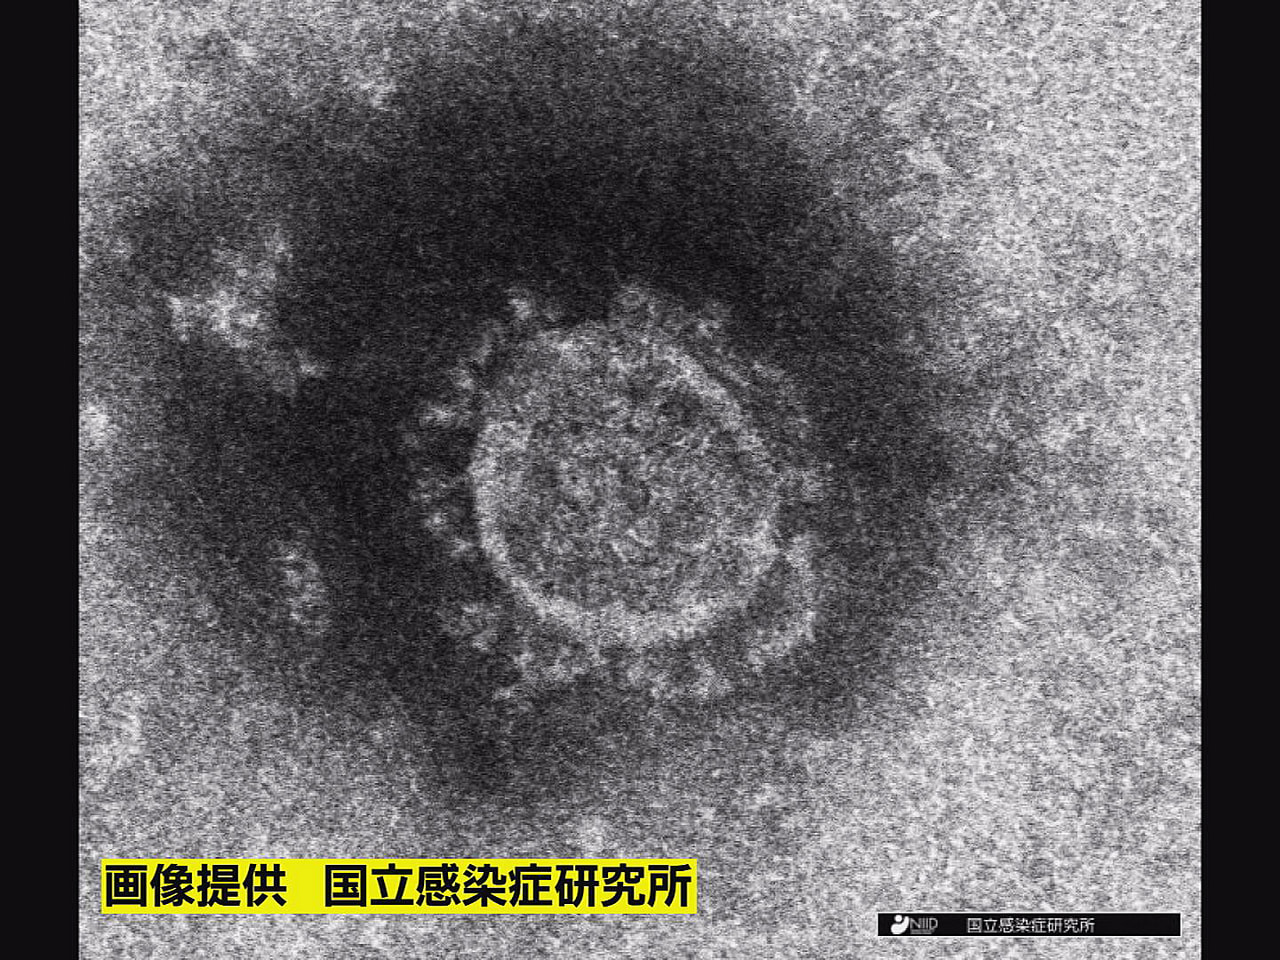 岐阜県は２８日、新型コロナウイルスの新規感染者が３５１人確認されたと発表しました...